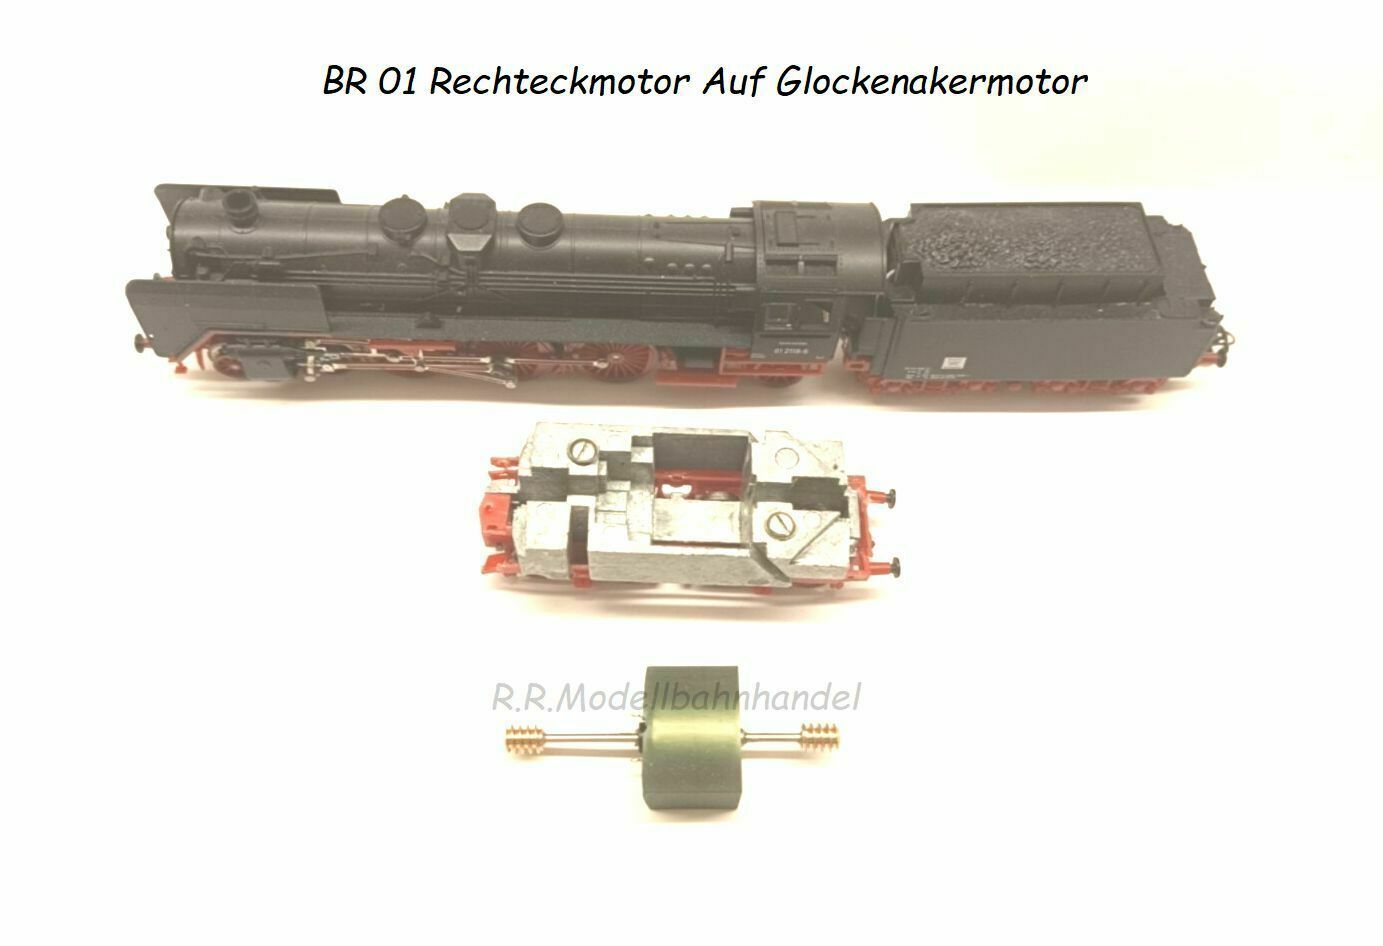 Motor Umbausatz für BR 86   BTTB  auf Glockenanckermotor NEU 